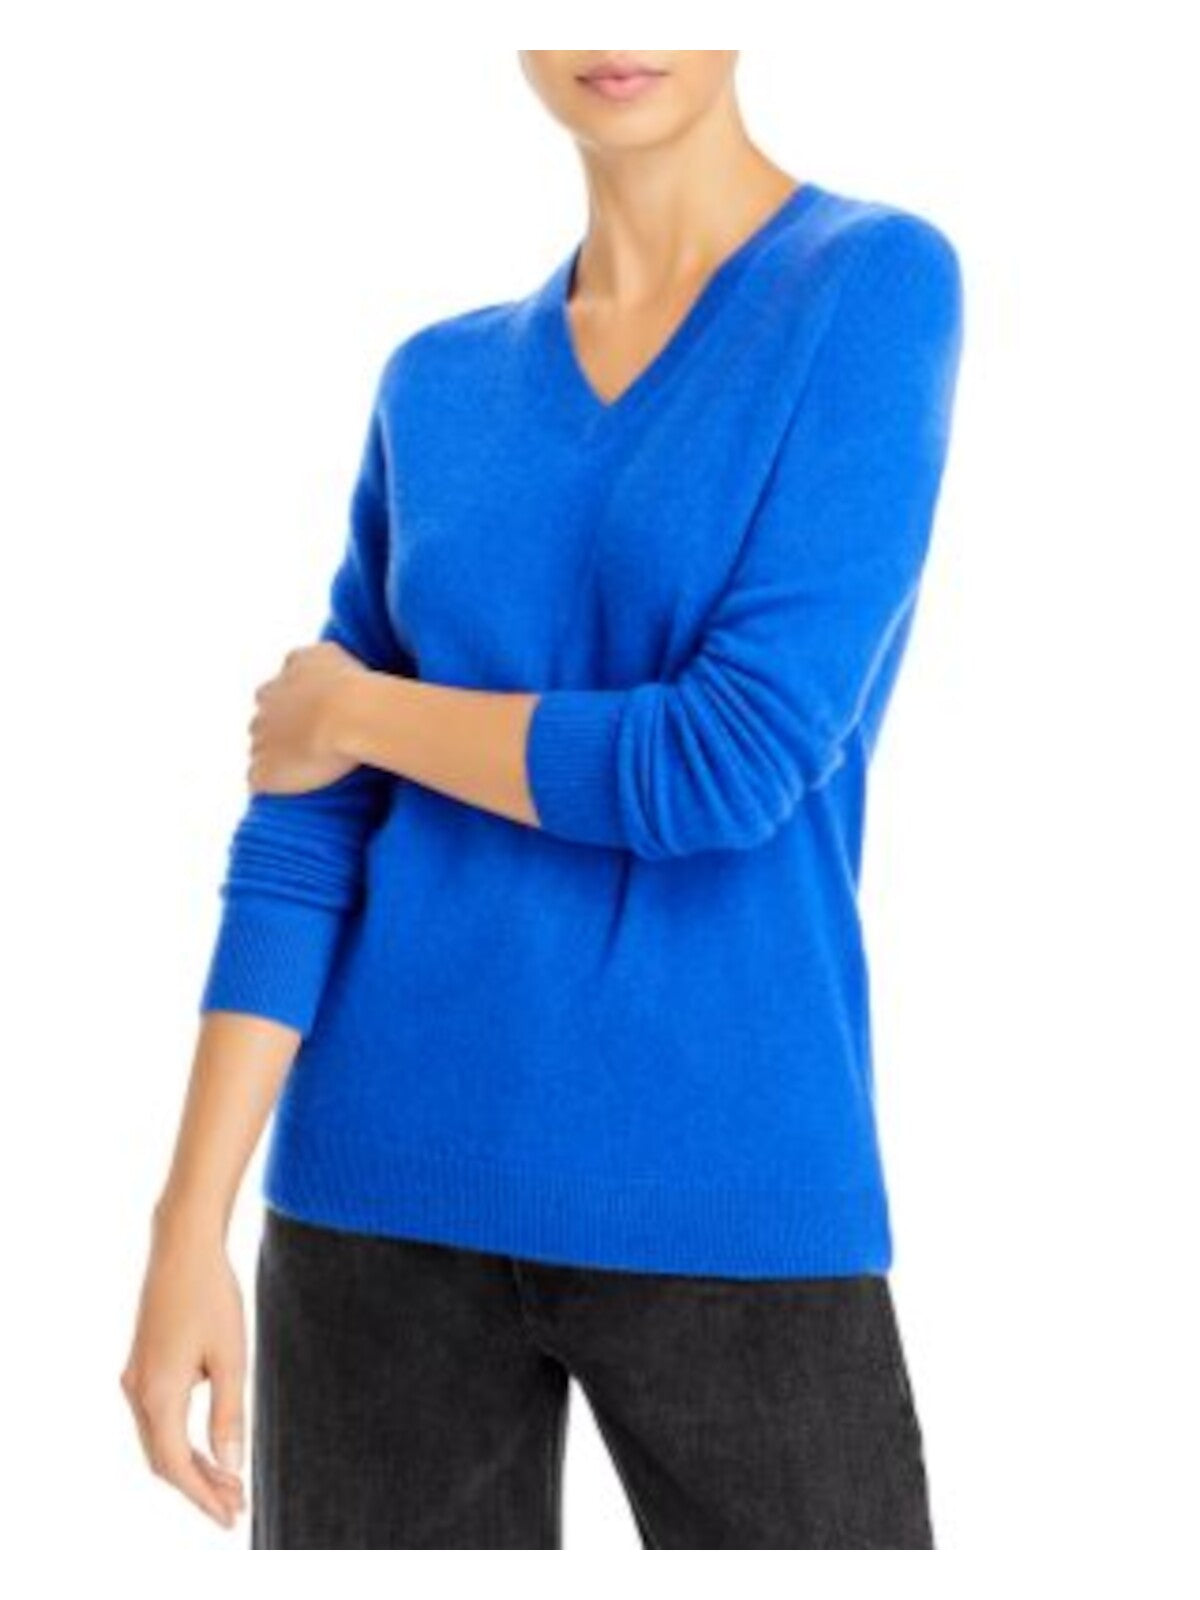 Designer Brand Womens Blue Long Sleeve V Neck Sweater S